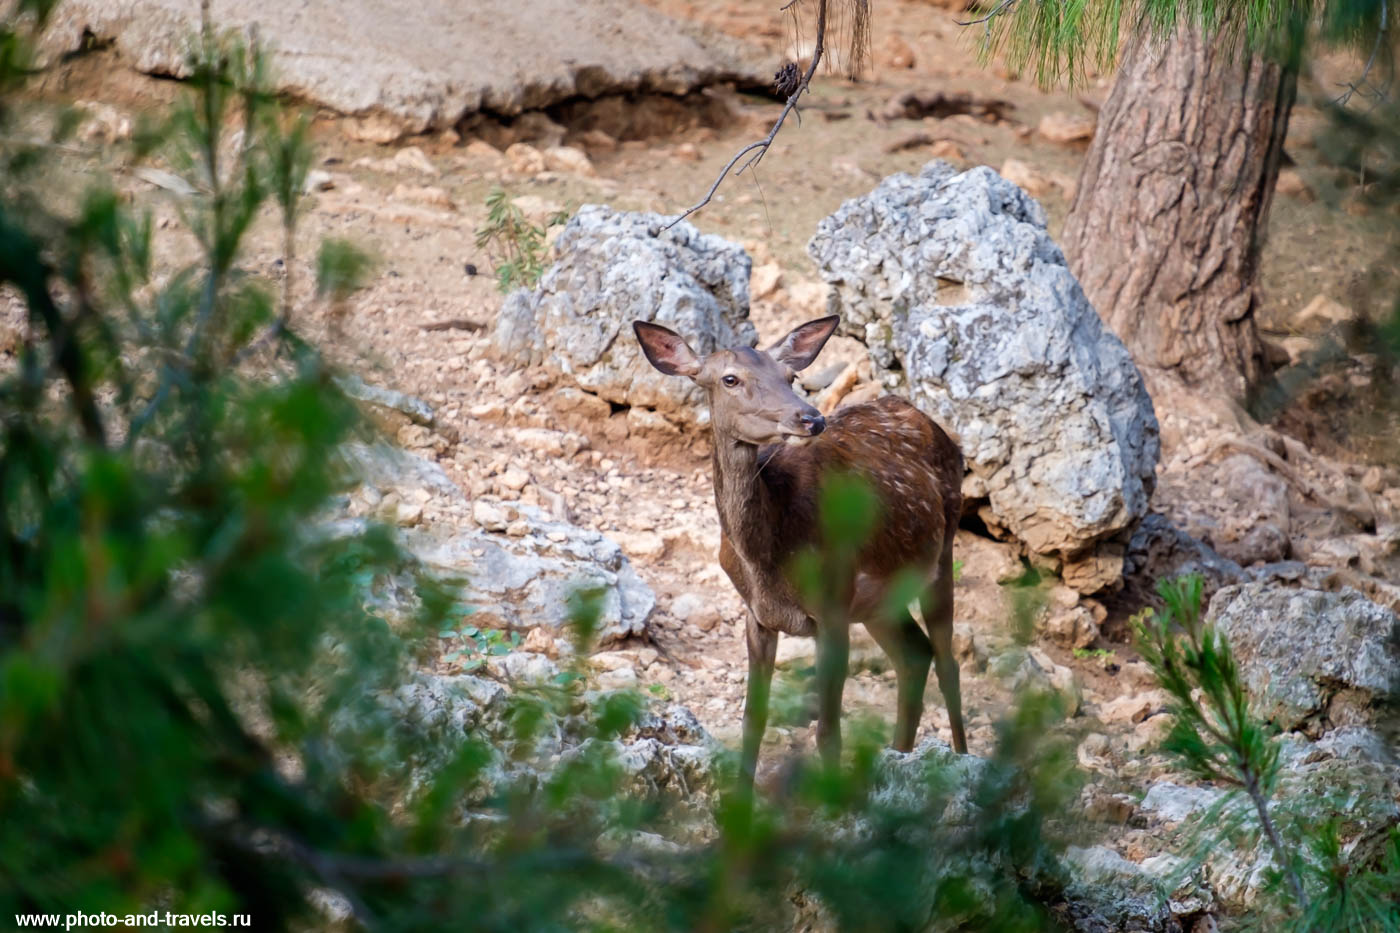 Фото 12. Как я устроил фотоохоту на оленя в зоопарке Анталии. Отзывы туристов об экскурсии самостоятельно.